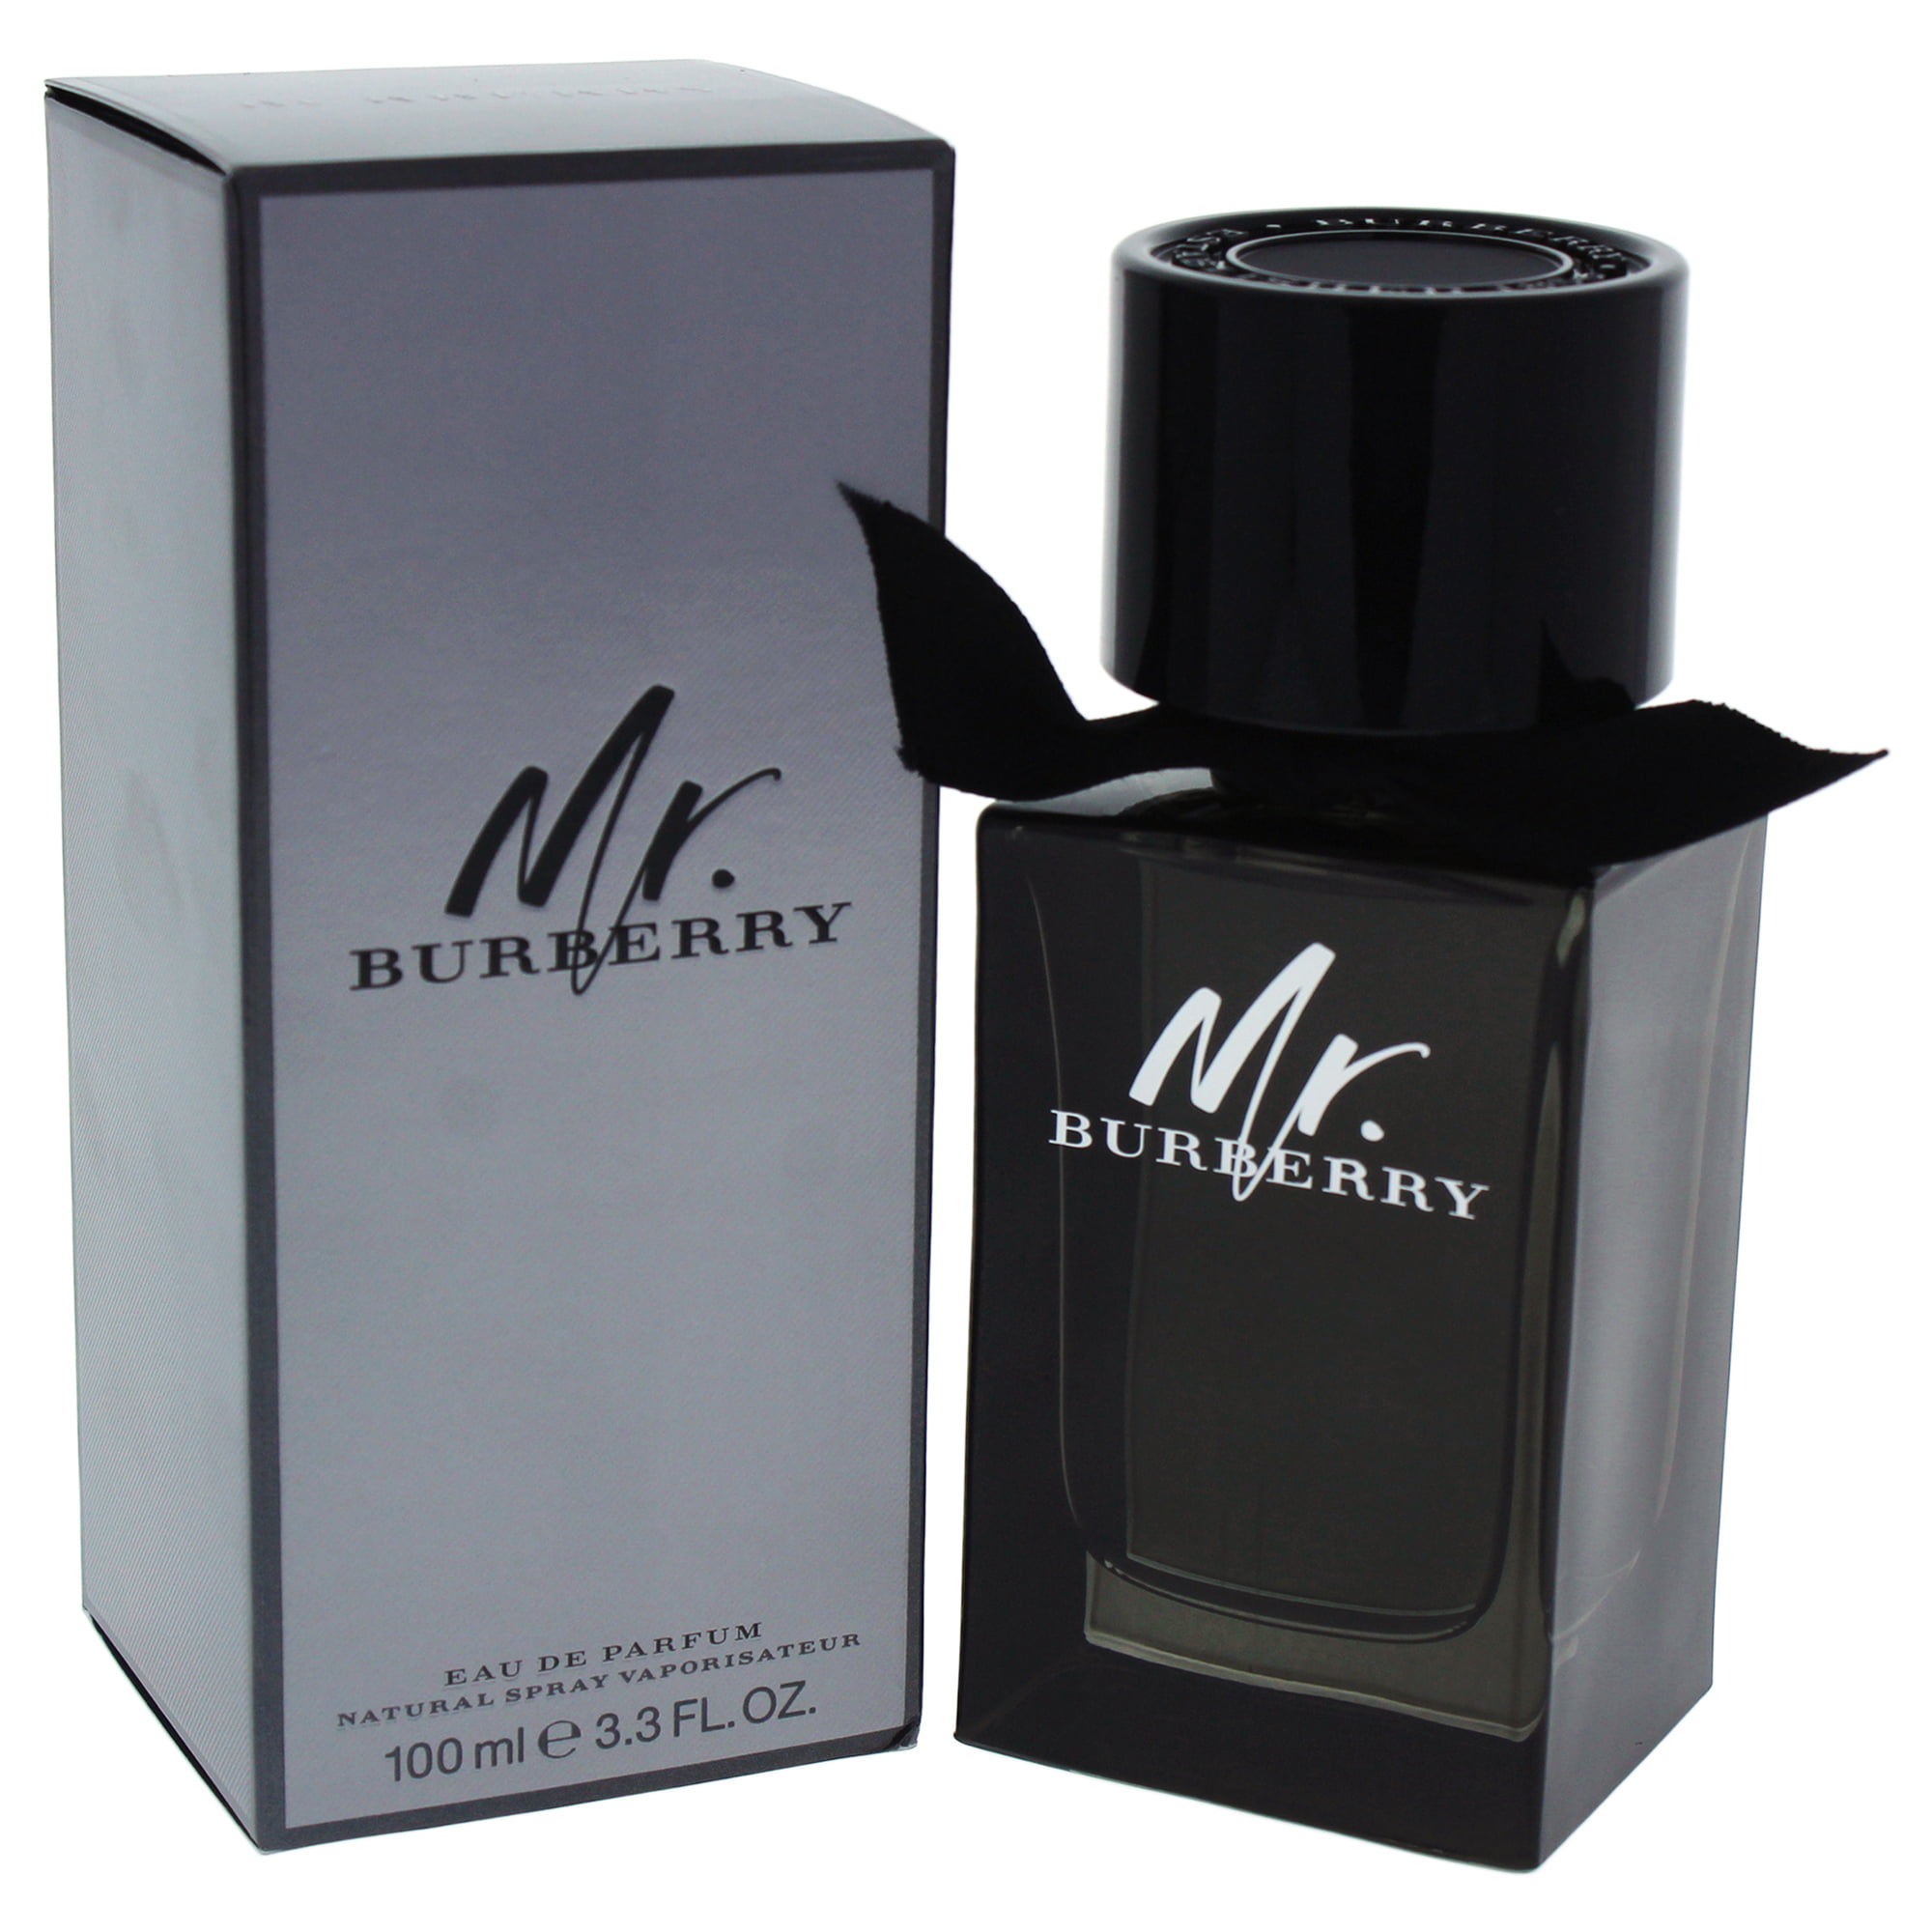 Burberry de Parfum, Cologne for Men, 3.3 Oz - Walmart.com